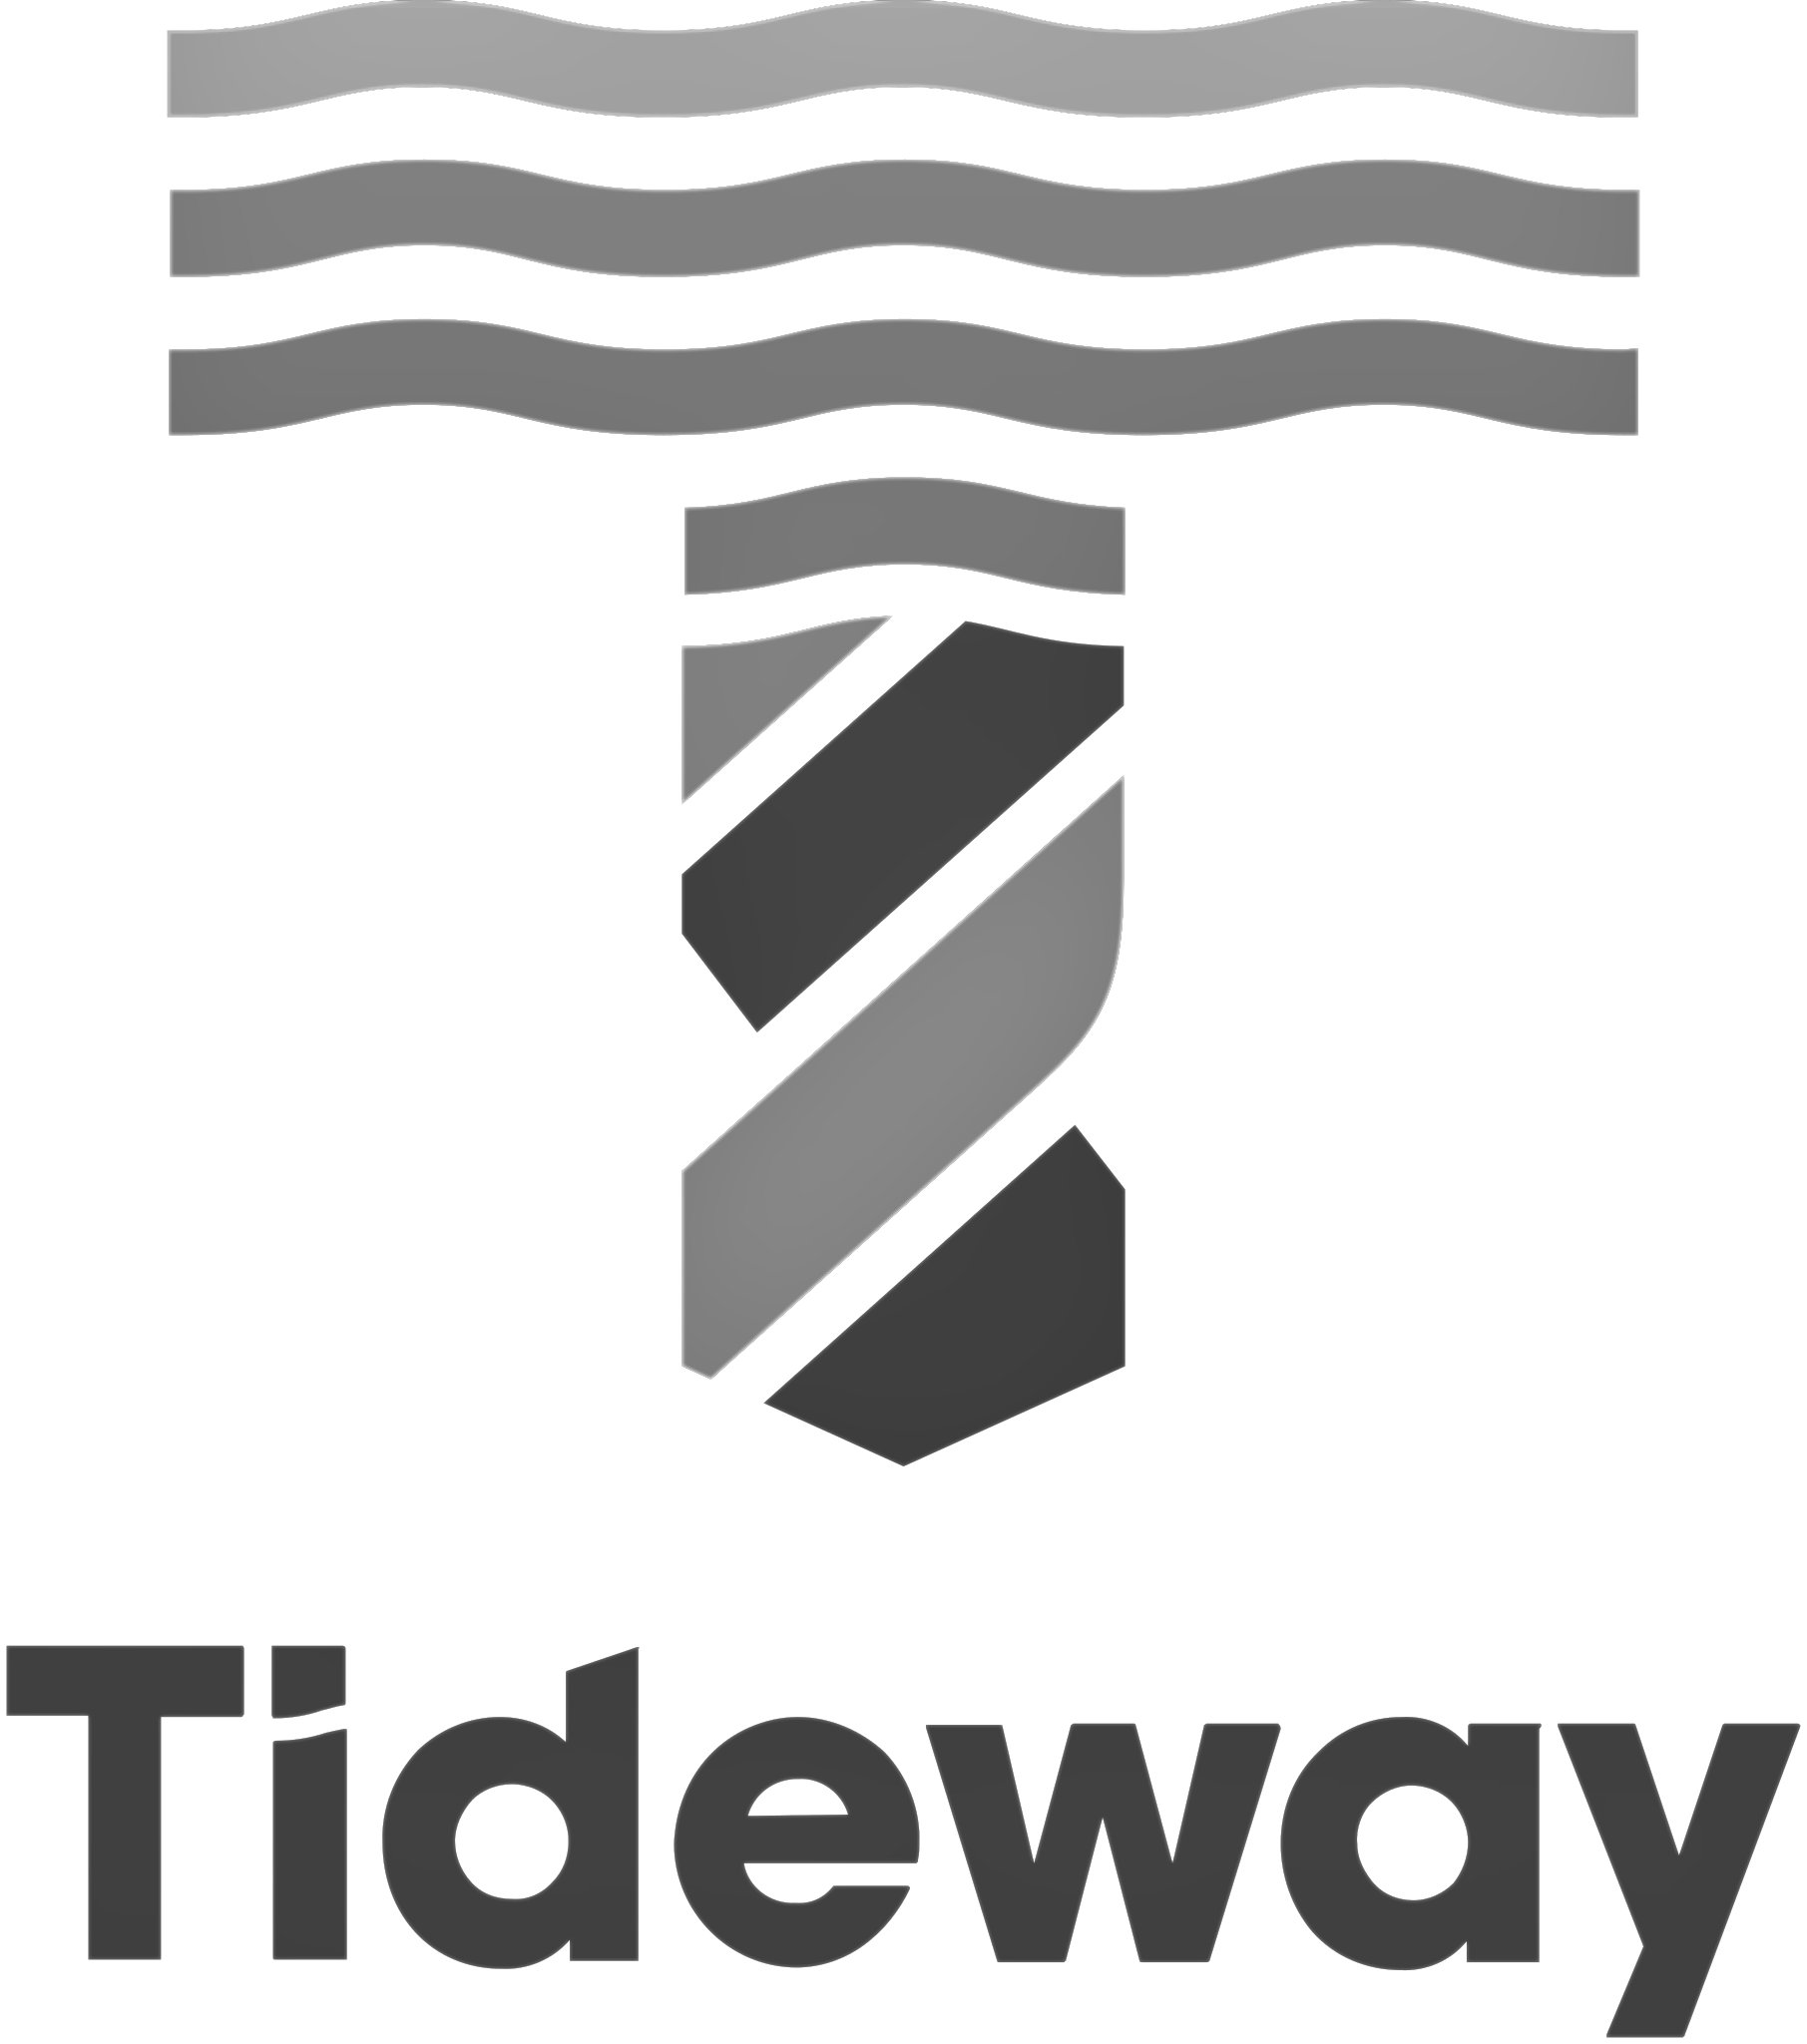 Tideway_logo.svg_BW.png